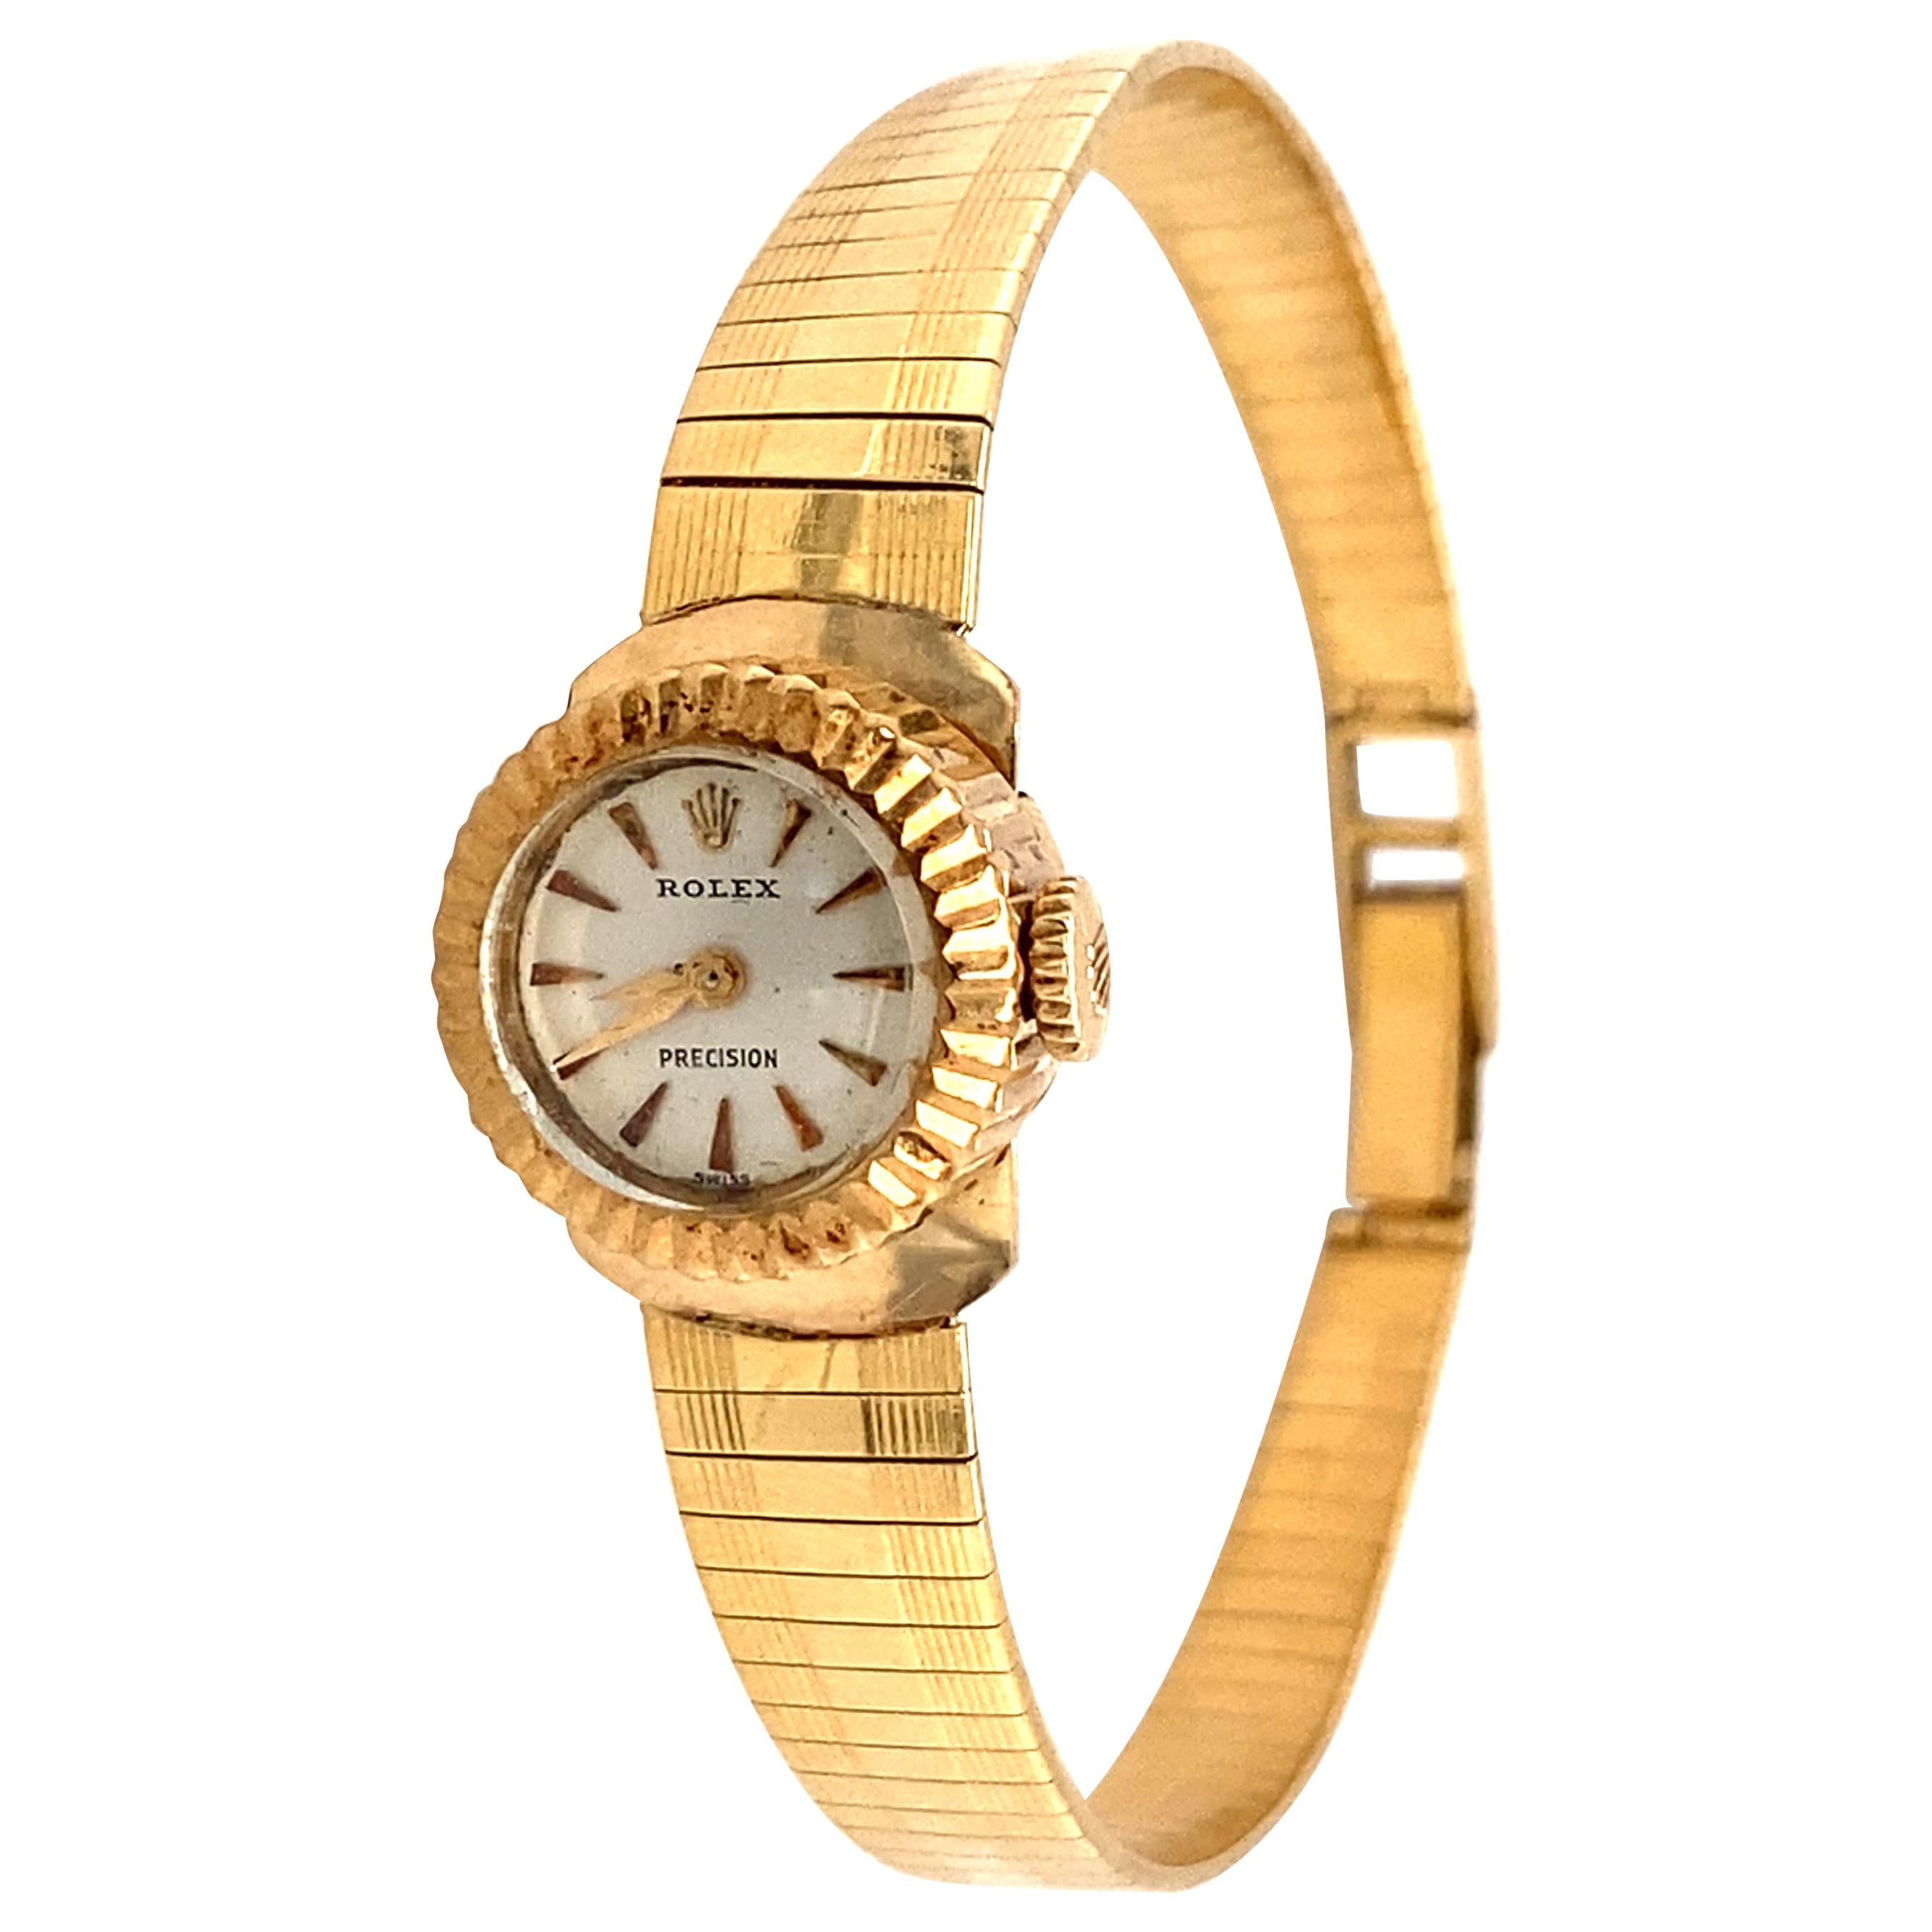 1960s Ladies Rolex Wristwatch, 18 Karat Yellow Gold